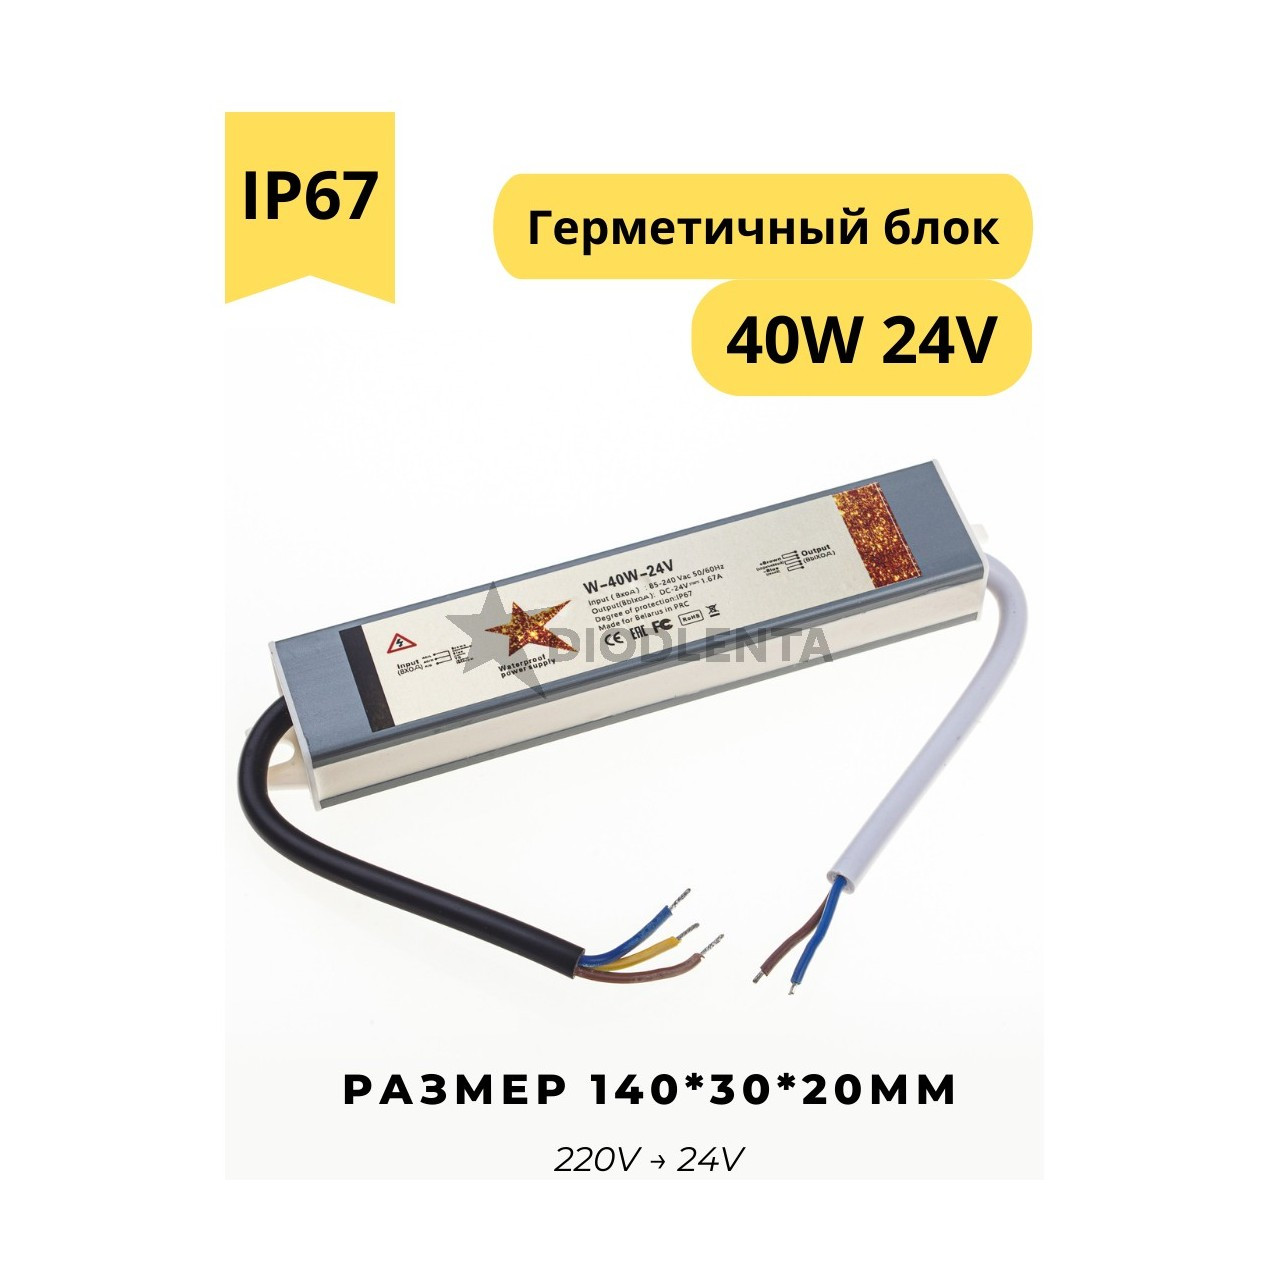 Герметичный блок питания W-40w-24v IP67 для светодиодных лент